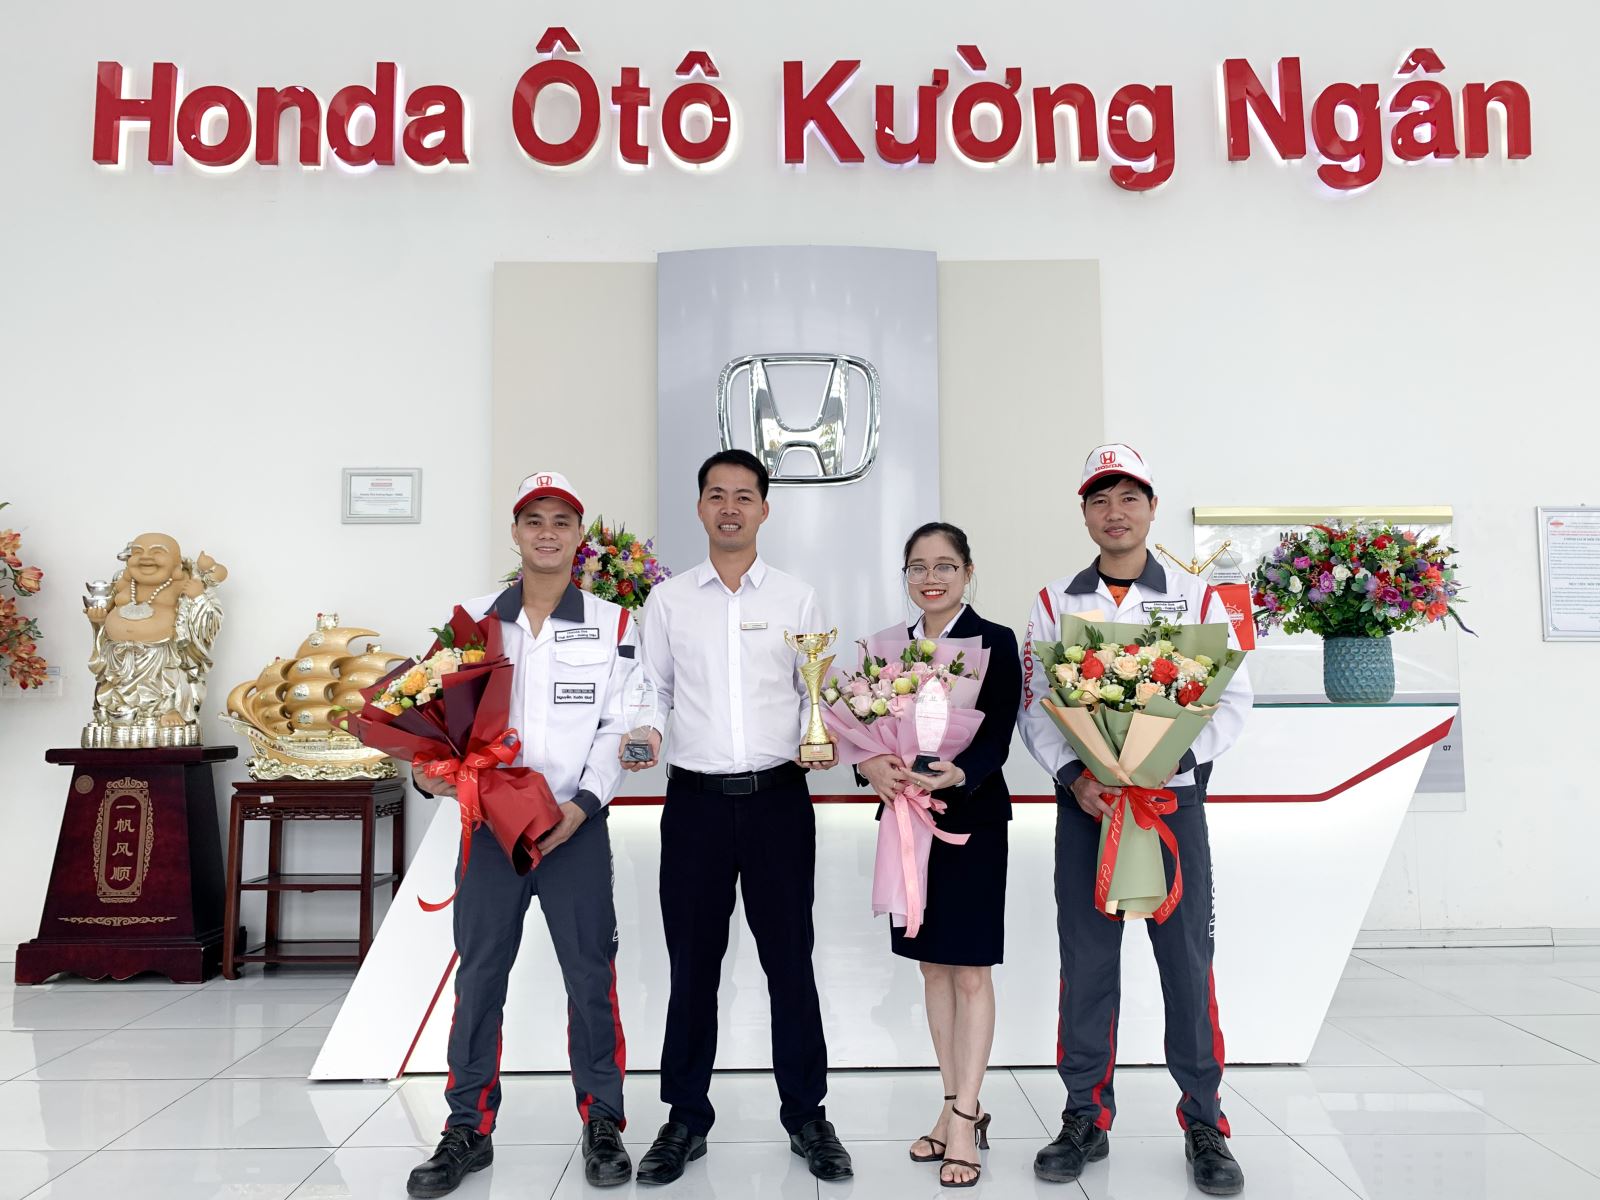 Giải thưởng là sự khẳng định cho vị thế và năng lực của Honda Ôtô Thái Bình - Hoàng Diệu